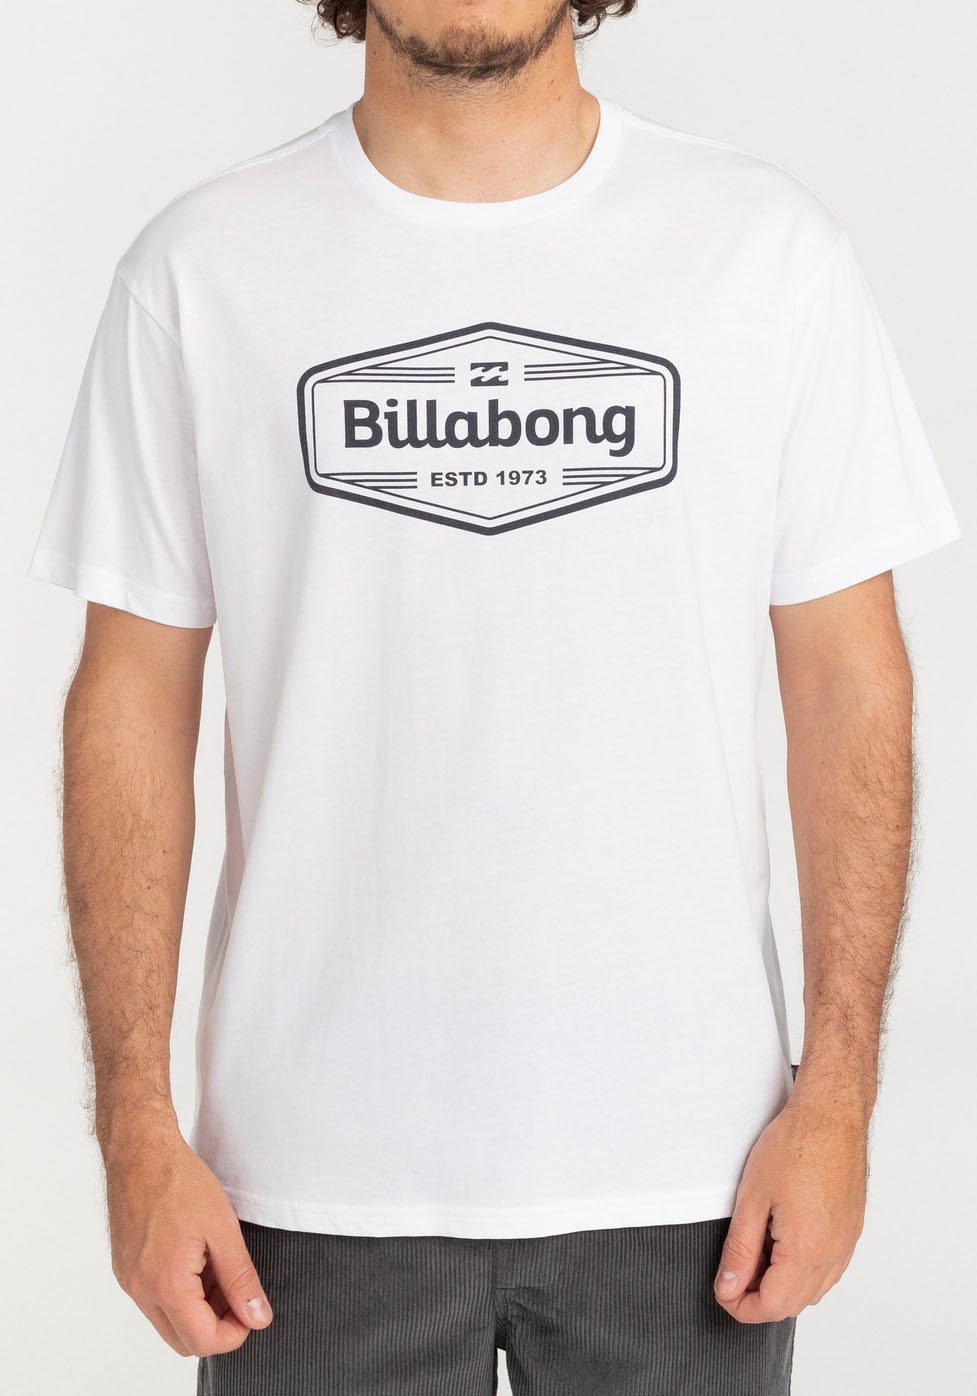 Billabong T-Shirt white